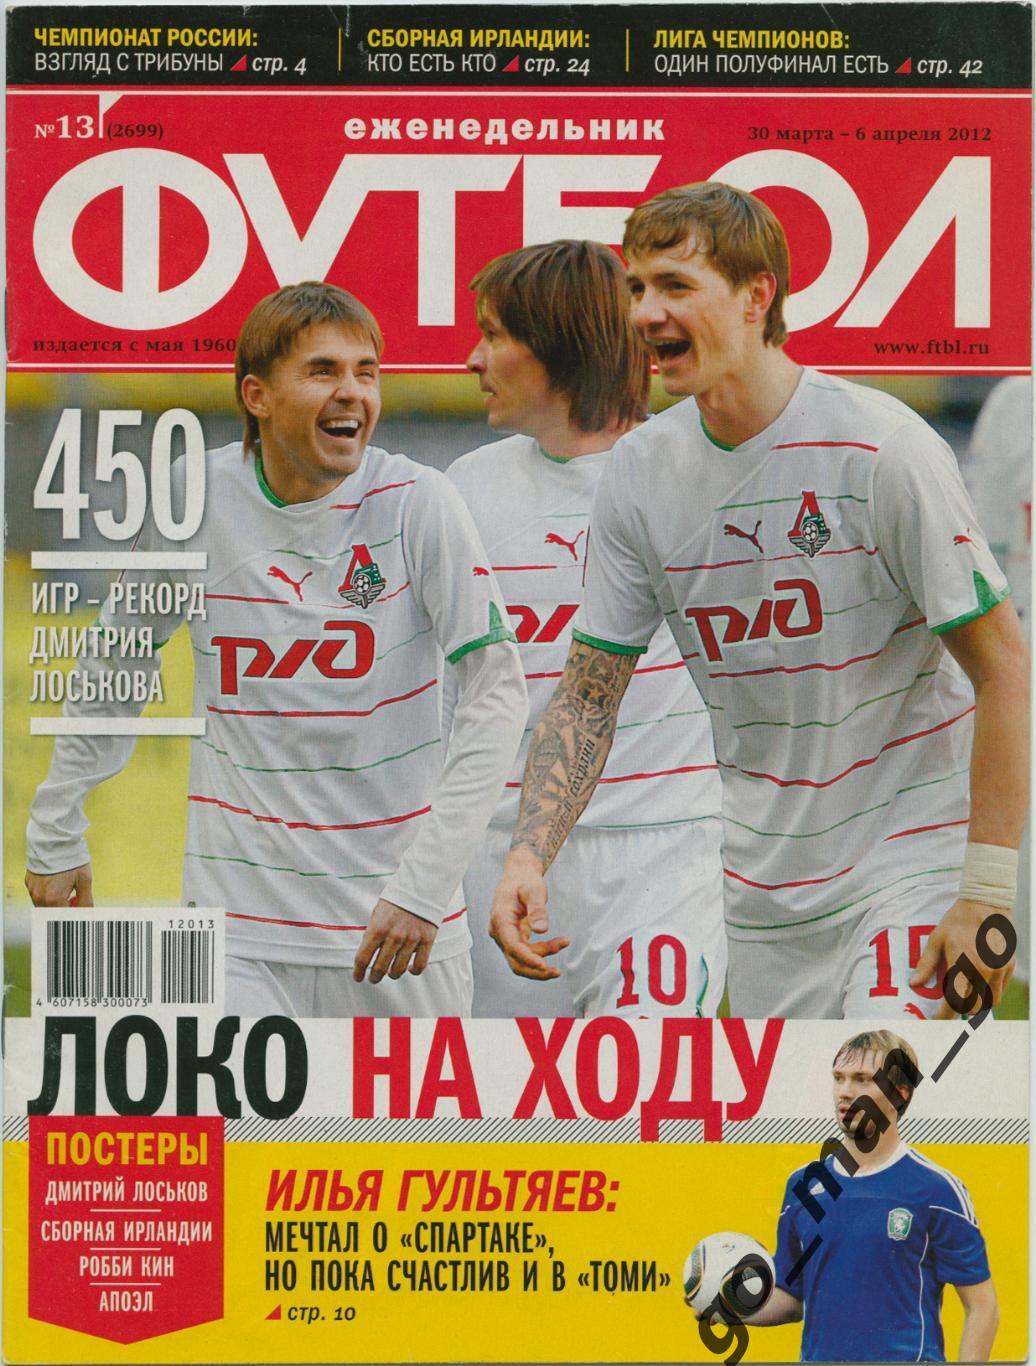 Еженедельник Футбол, 2012, № 13.